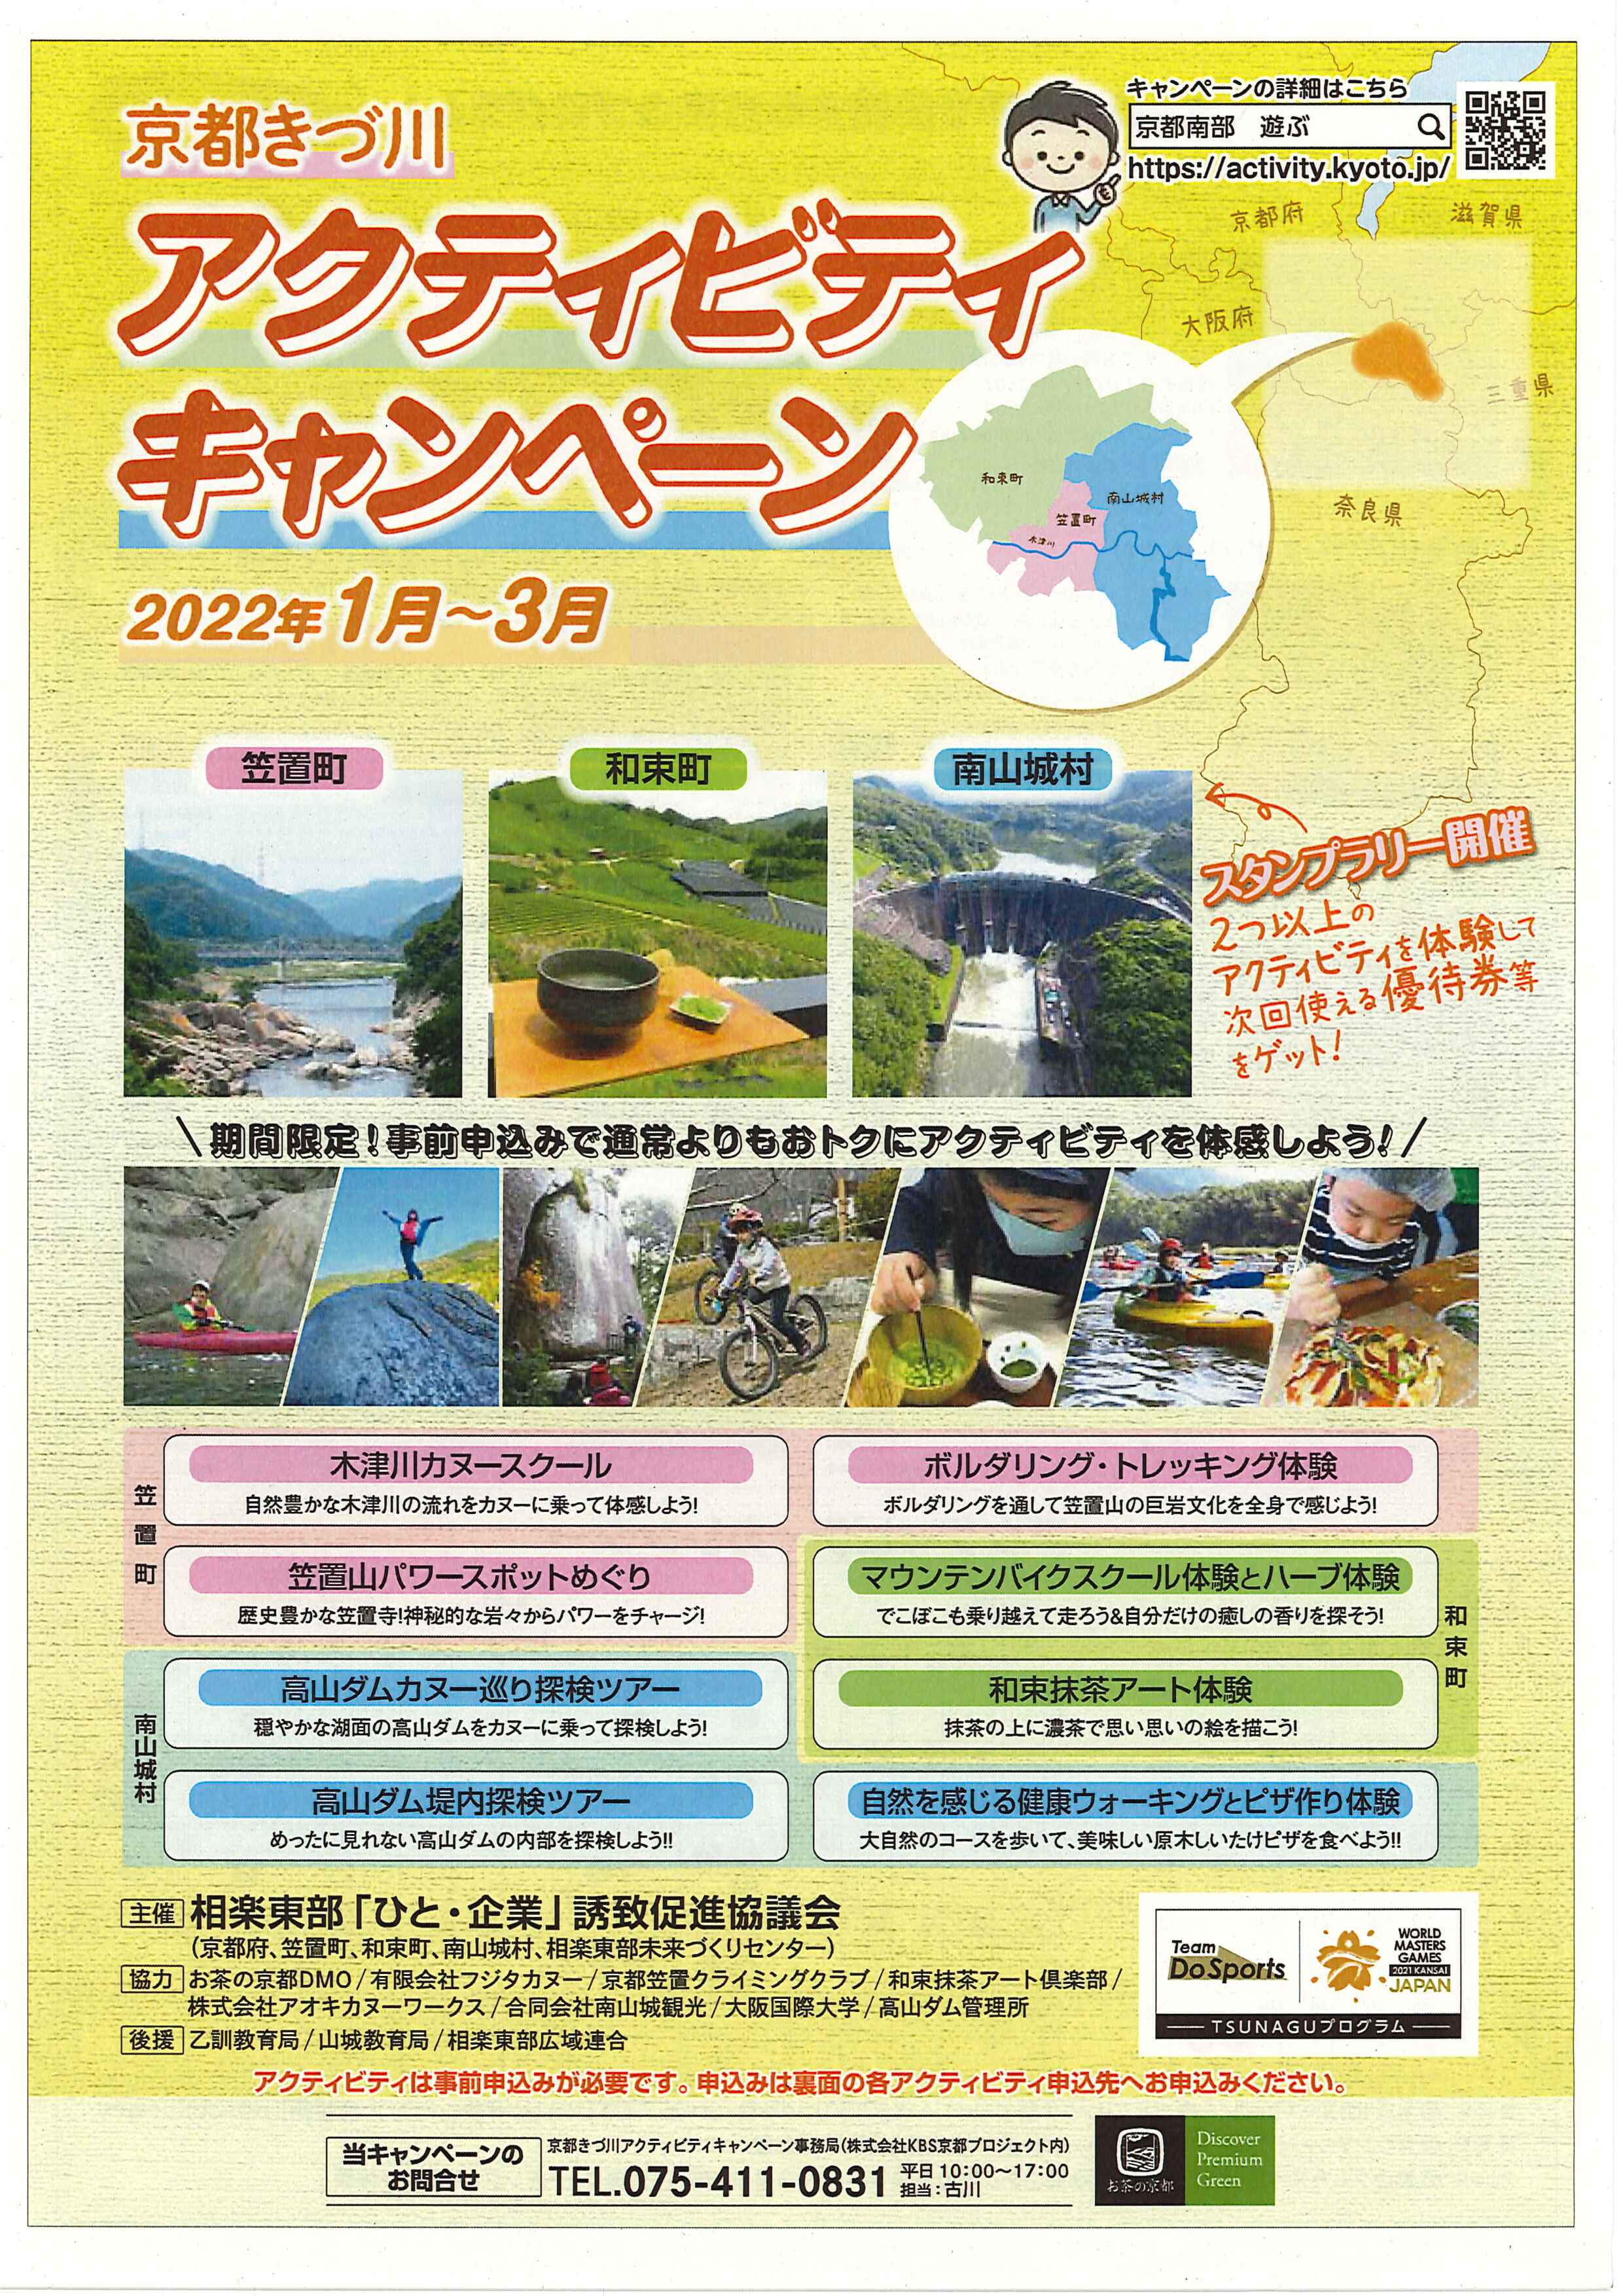 京都きづ川アクティビティキャンペーン　イベントNo.6
「マウンテンバイクスクール体験とハーブ体験」